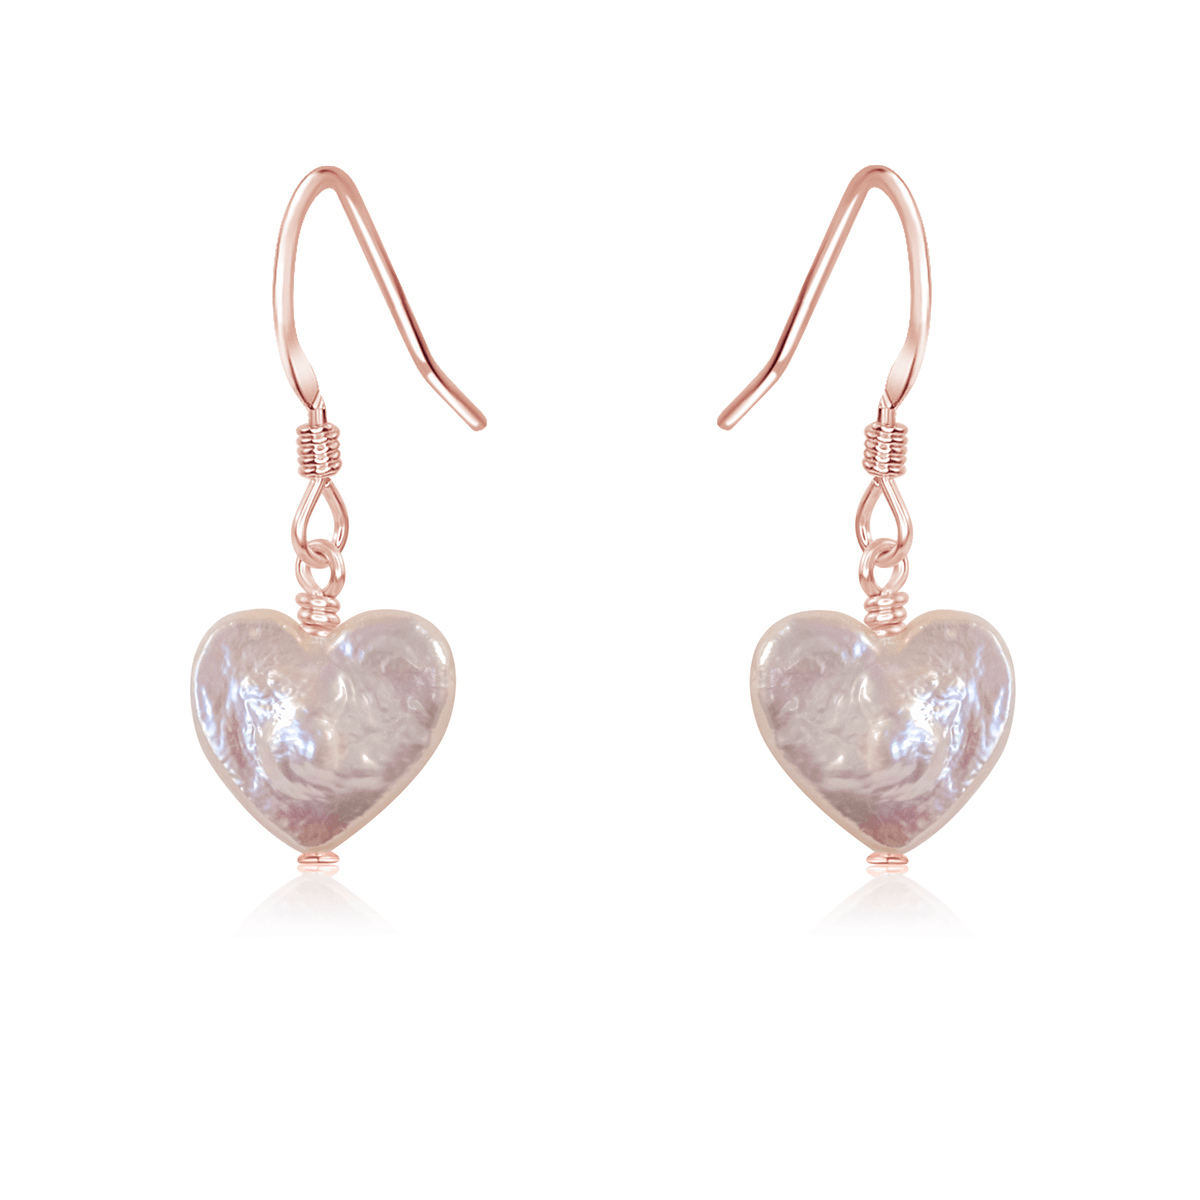 Freshwater Pearl Heart Dangle Earrings - Freshwater Pearl Heart Dangle Earrings - 14k Rose Gold Fill - Luna Tide Handmade Crystal Jewellery